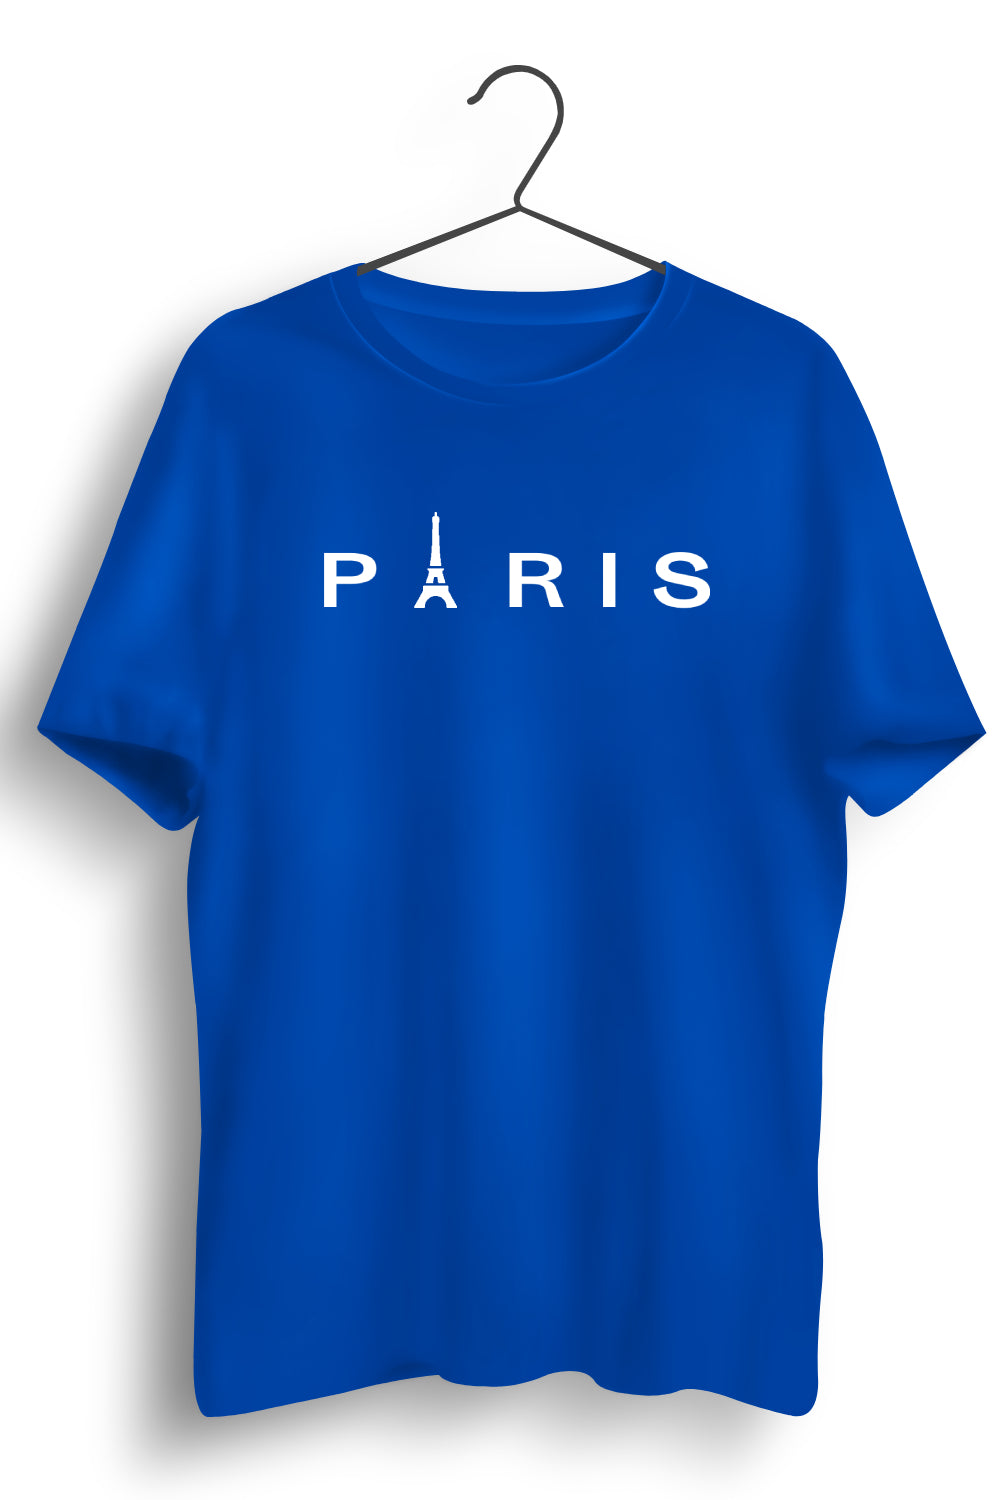 Paris Graphic Printed Blue Tshirt